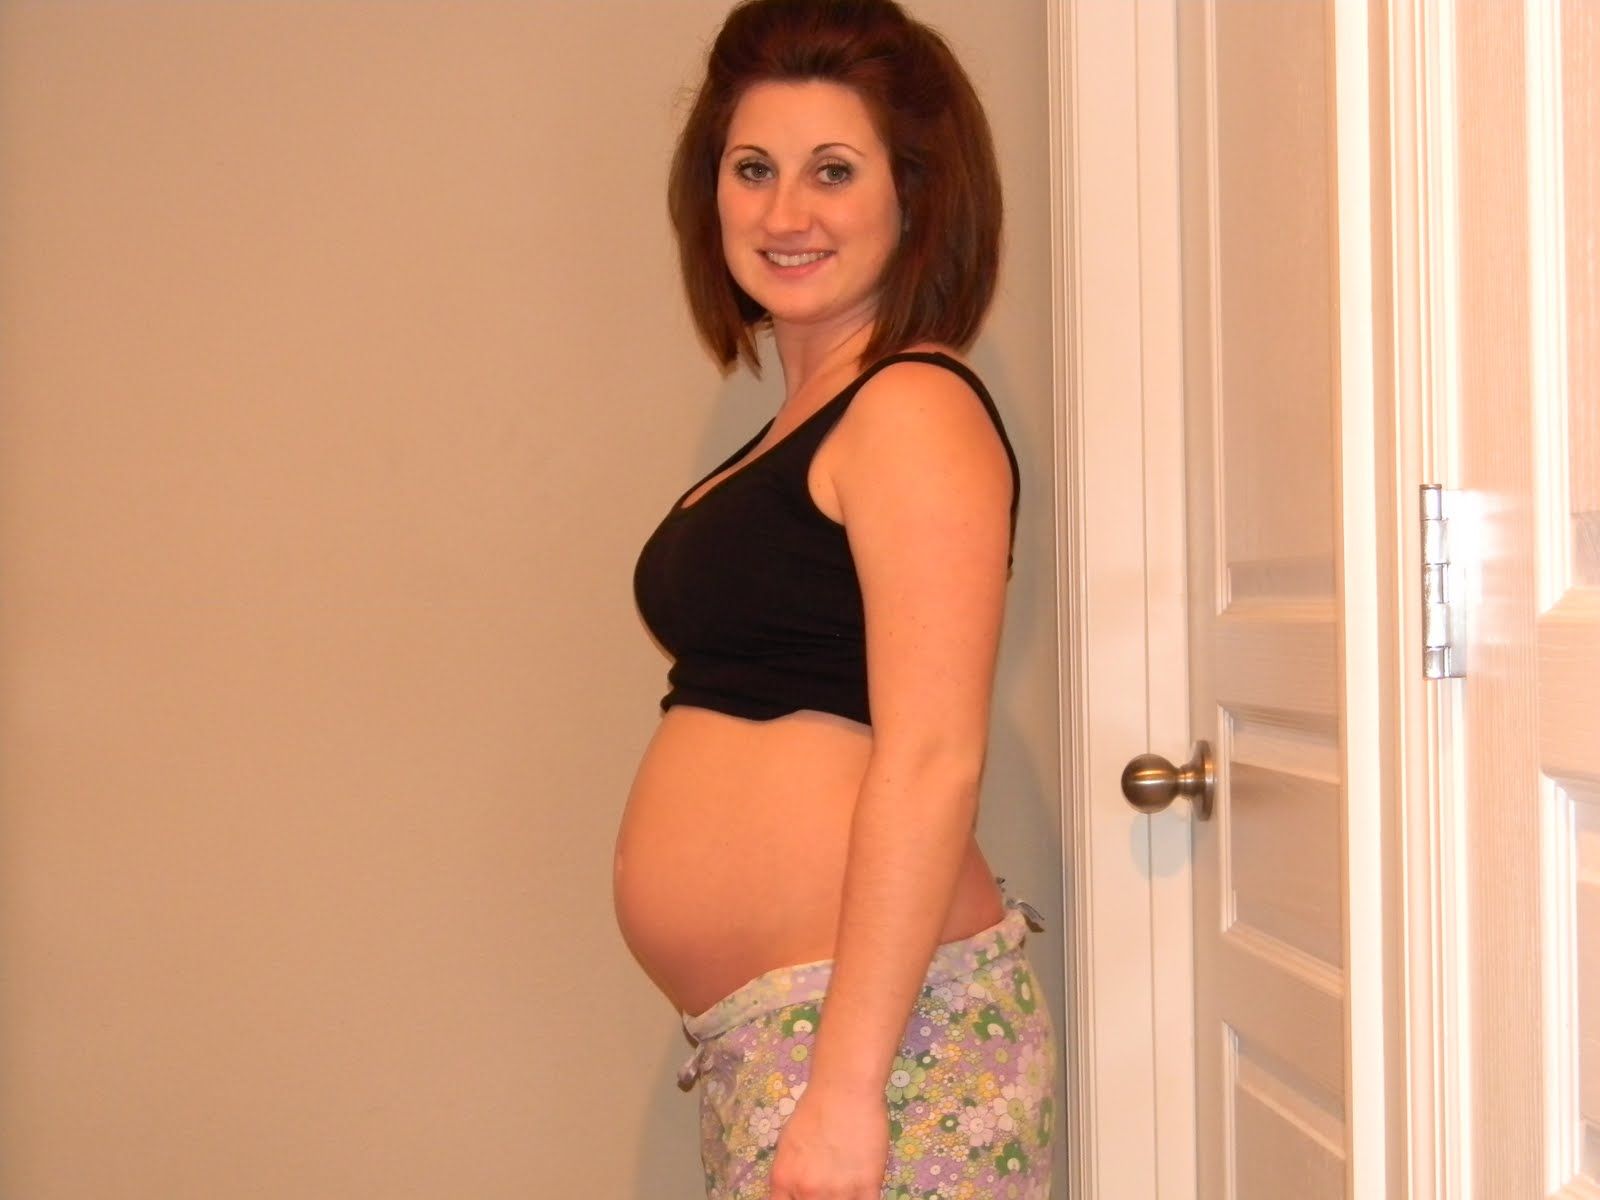 15 неделя беременности - что происходит с малышом и мамой, развитие плода и ощущения в животе, шевеления